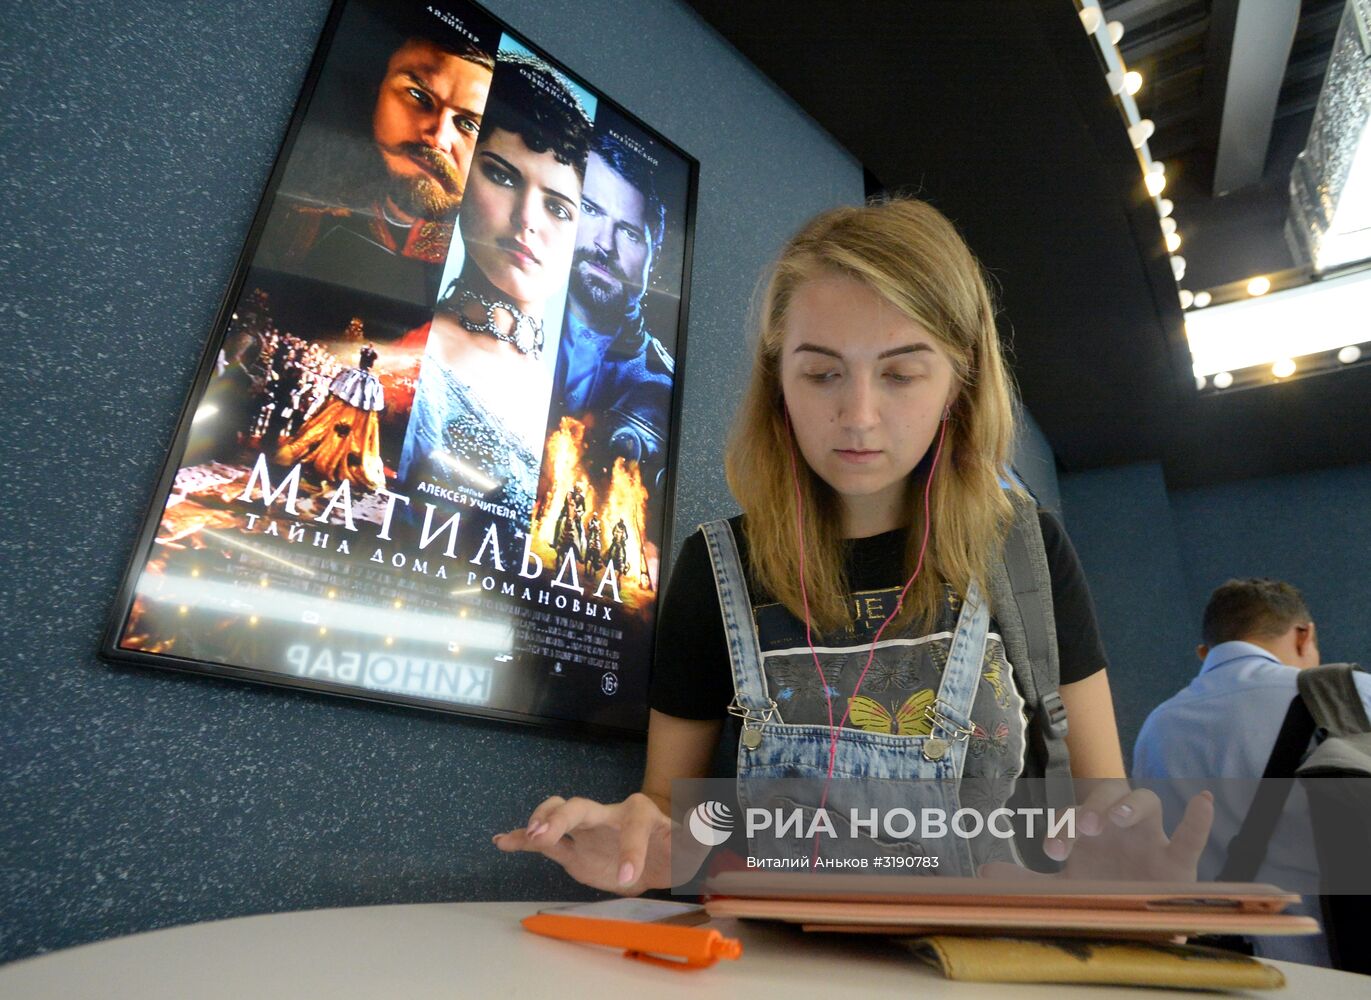 Специальный показ фильма "Матильда" во Владивостоке